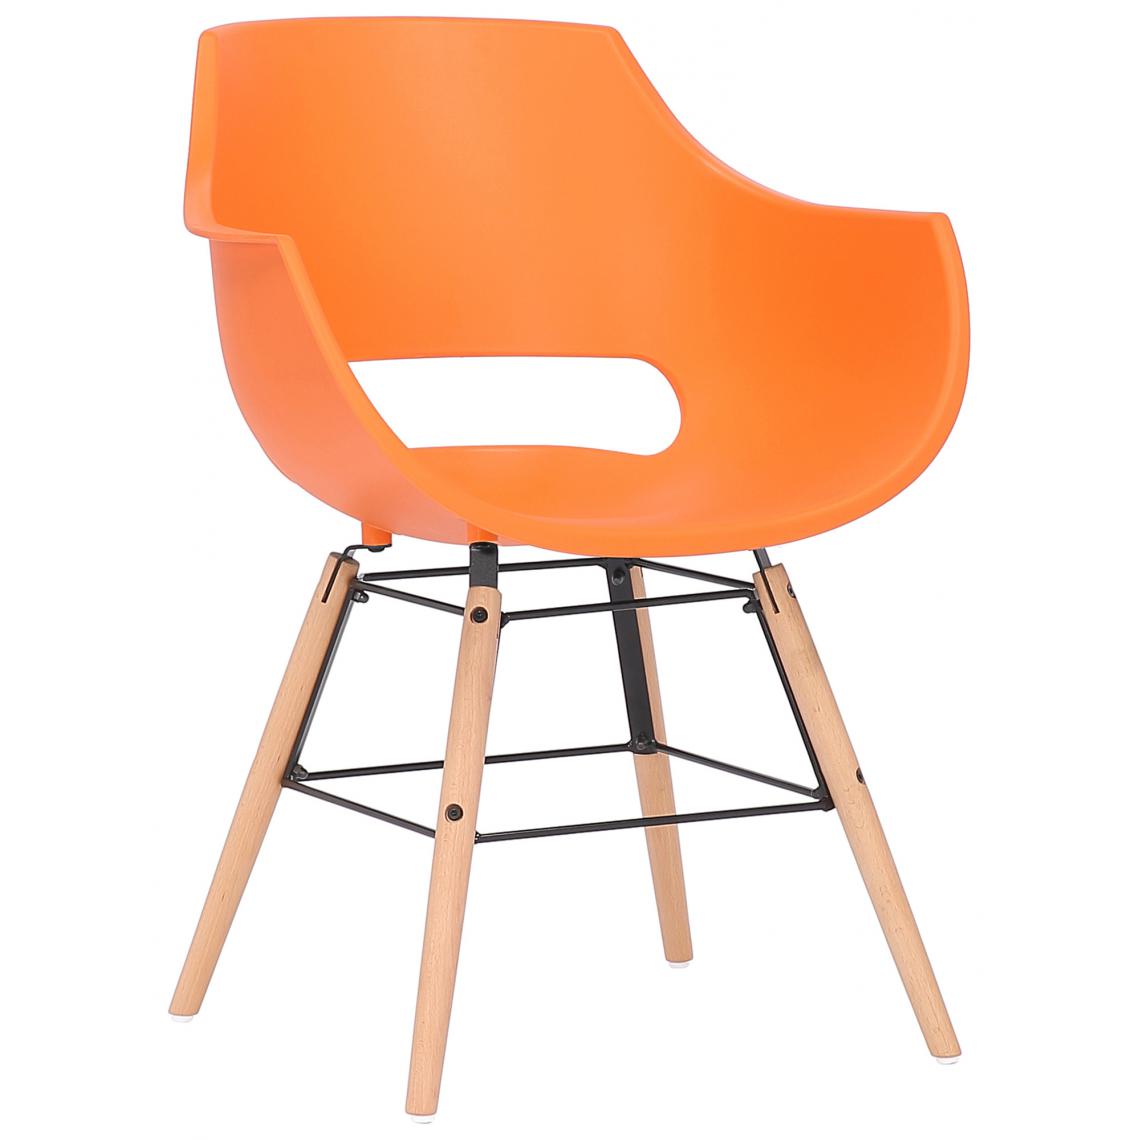 Icaverne - Splendide Chaise en plastique serie Helsinki naturelle couleur Orange - Chaises